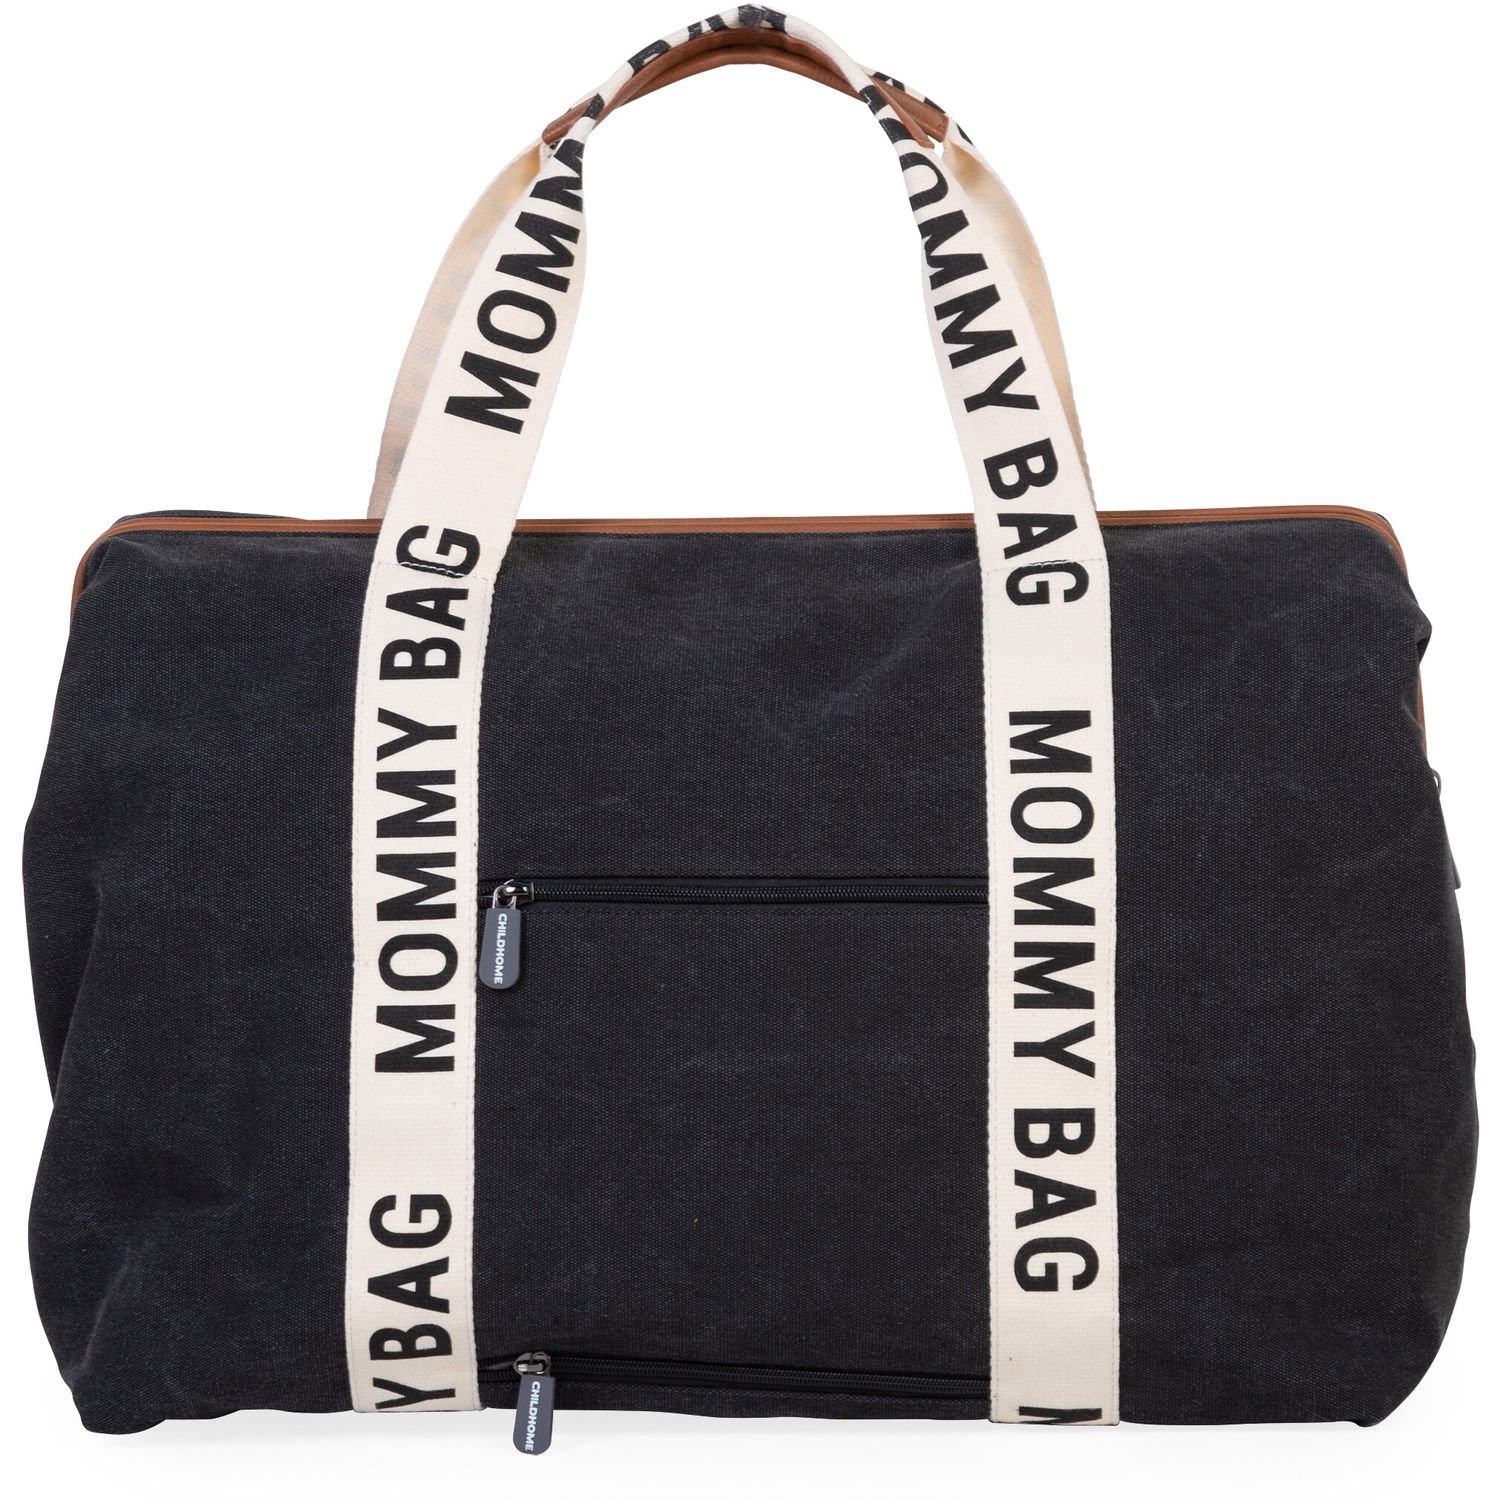 Сумка Childhome Mommy bag Signature - Canvas Black, черная (CWMBBSCBL) - фото 5